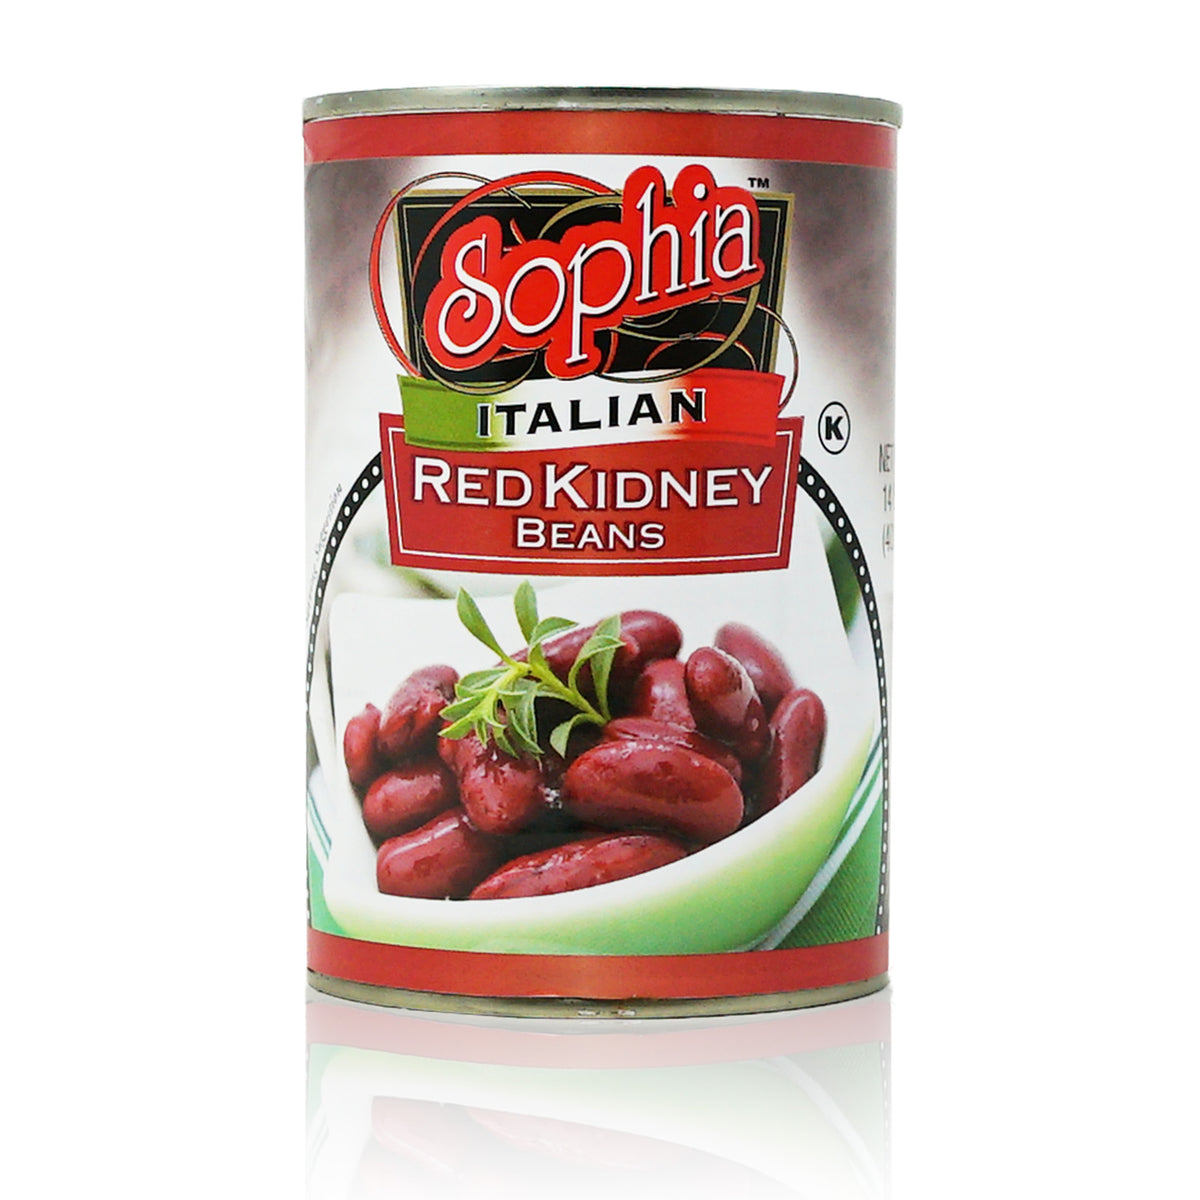 Sophia Italian Beans - Red Kidney